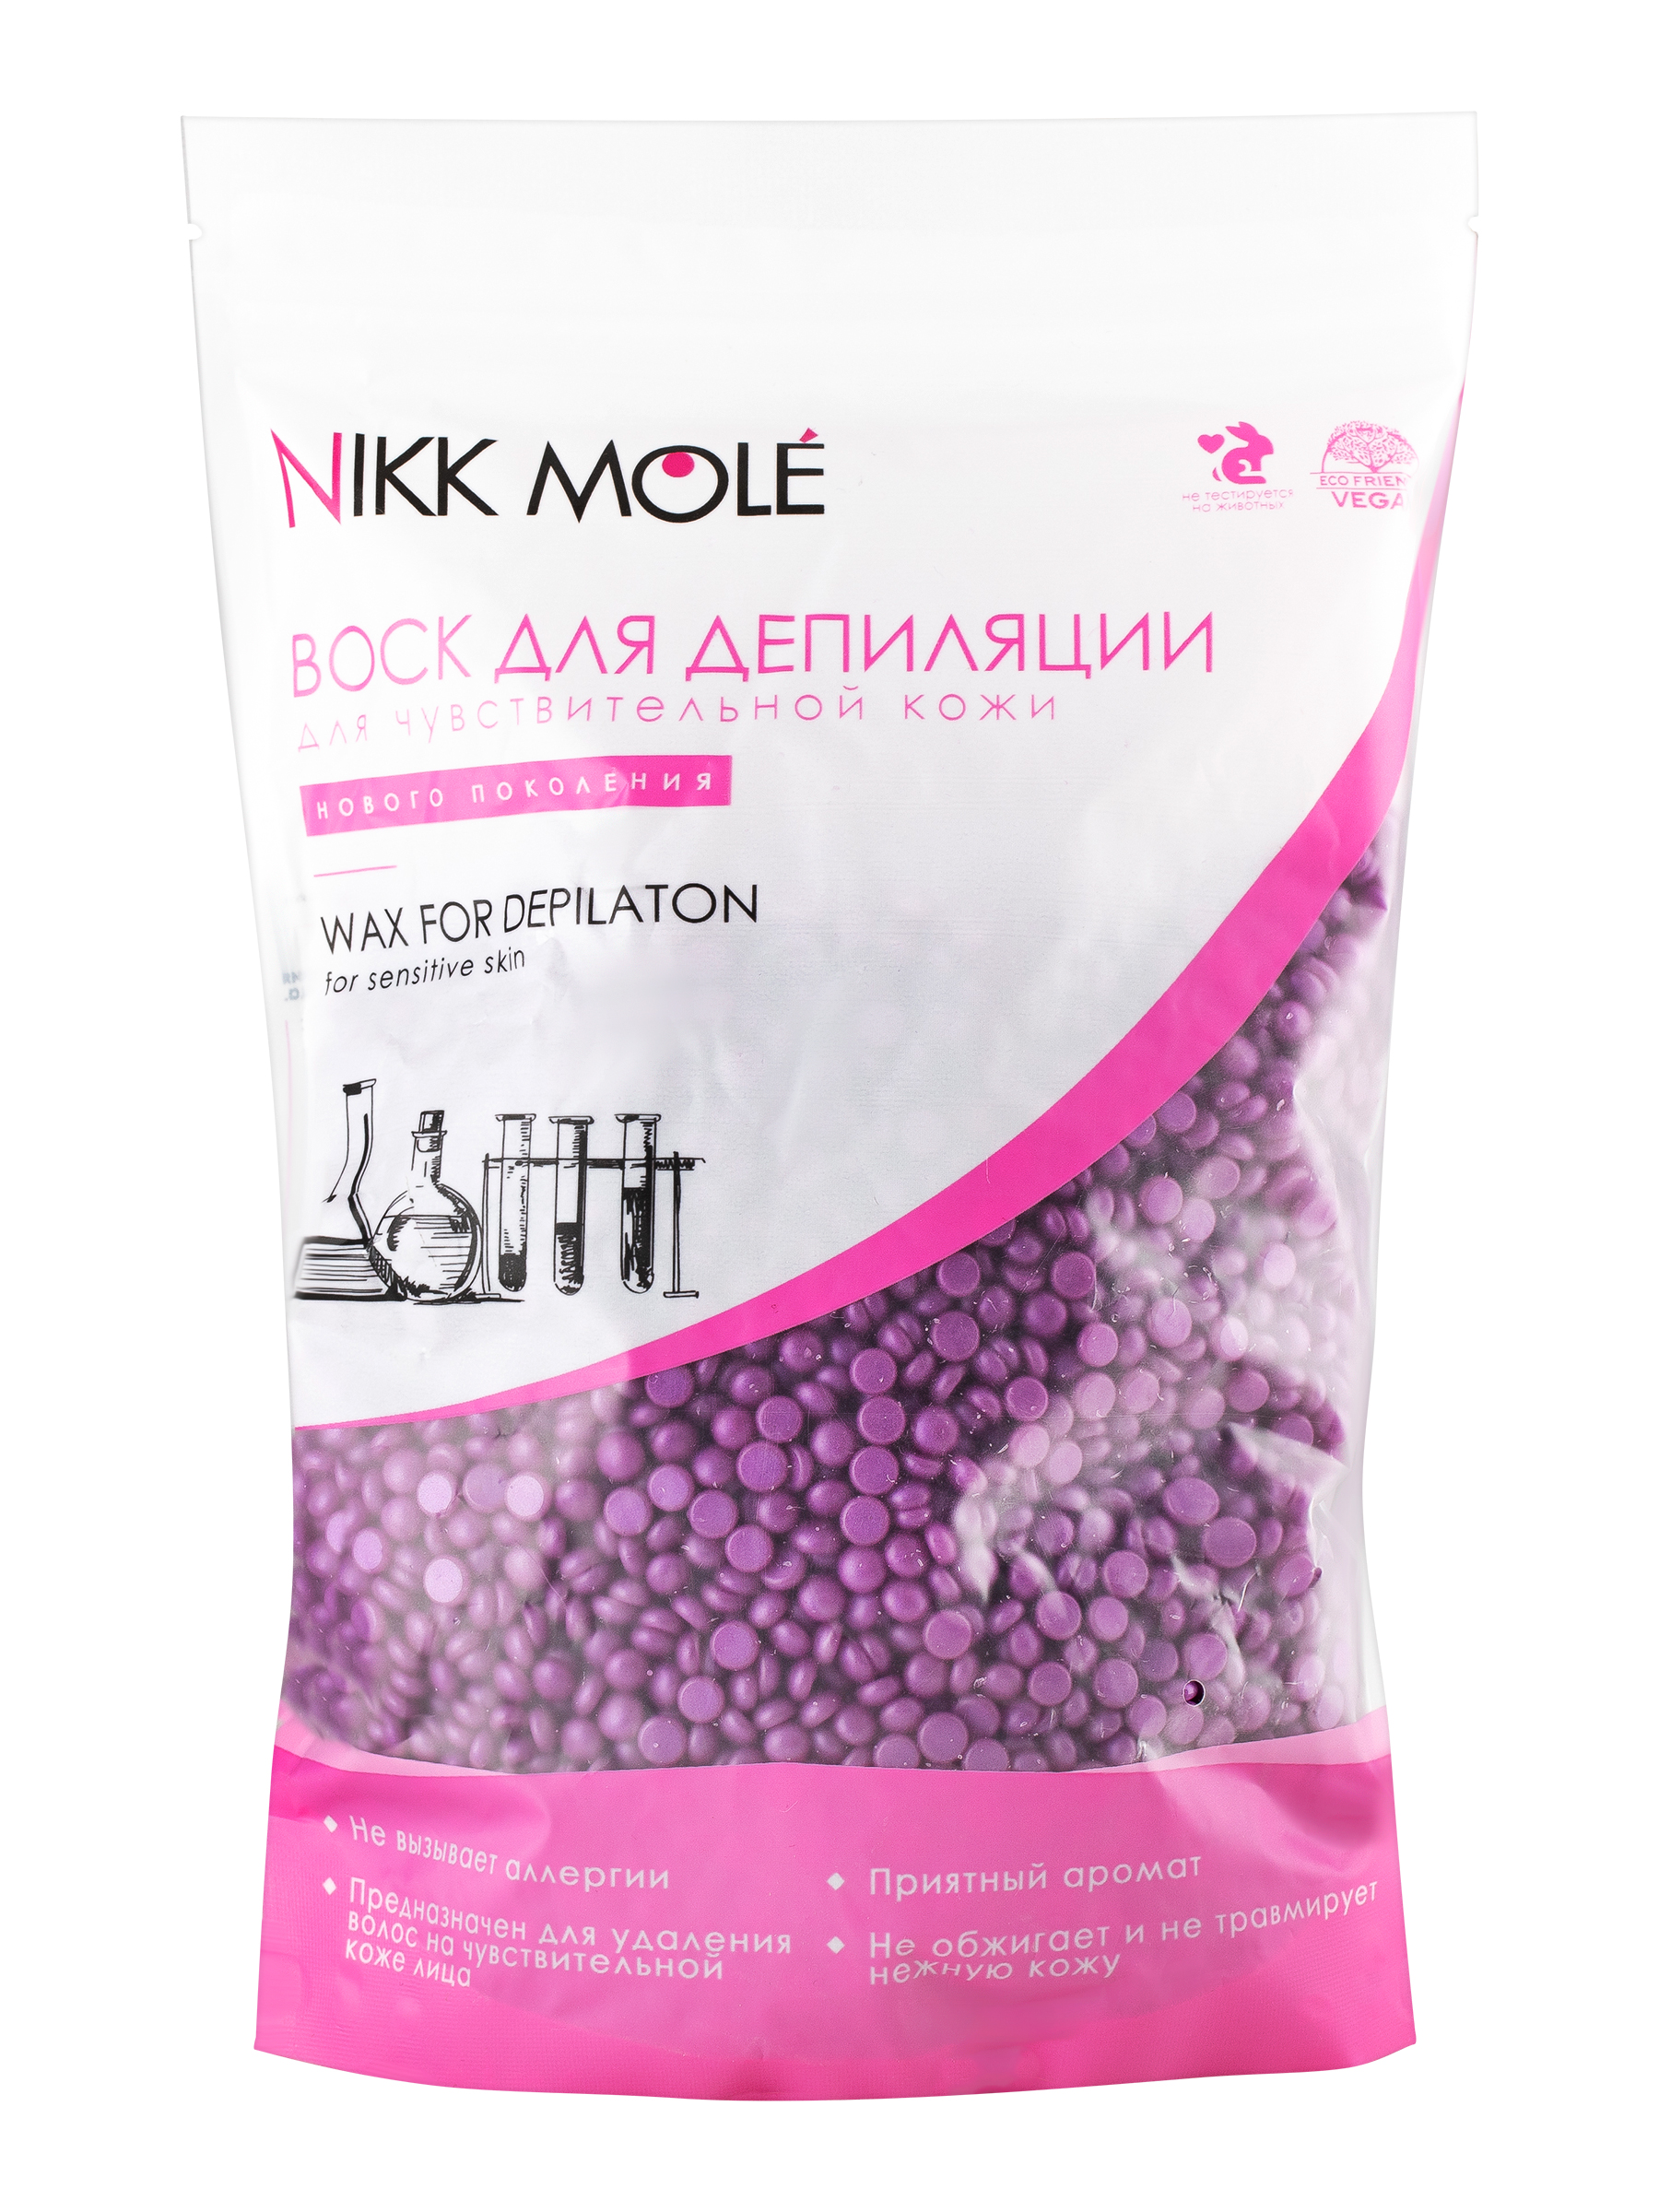 Воск для депиляции Nikk Mole Виноград, для чувствительной кожи лица, в гранулах, 500 г пинцет nikk mole скосый серебро